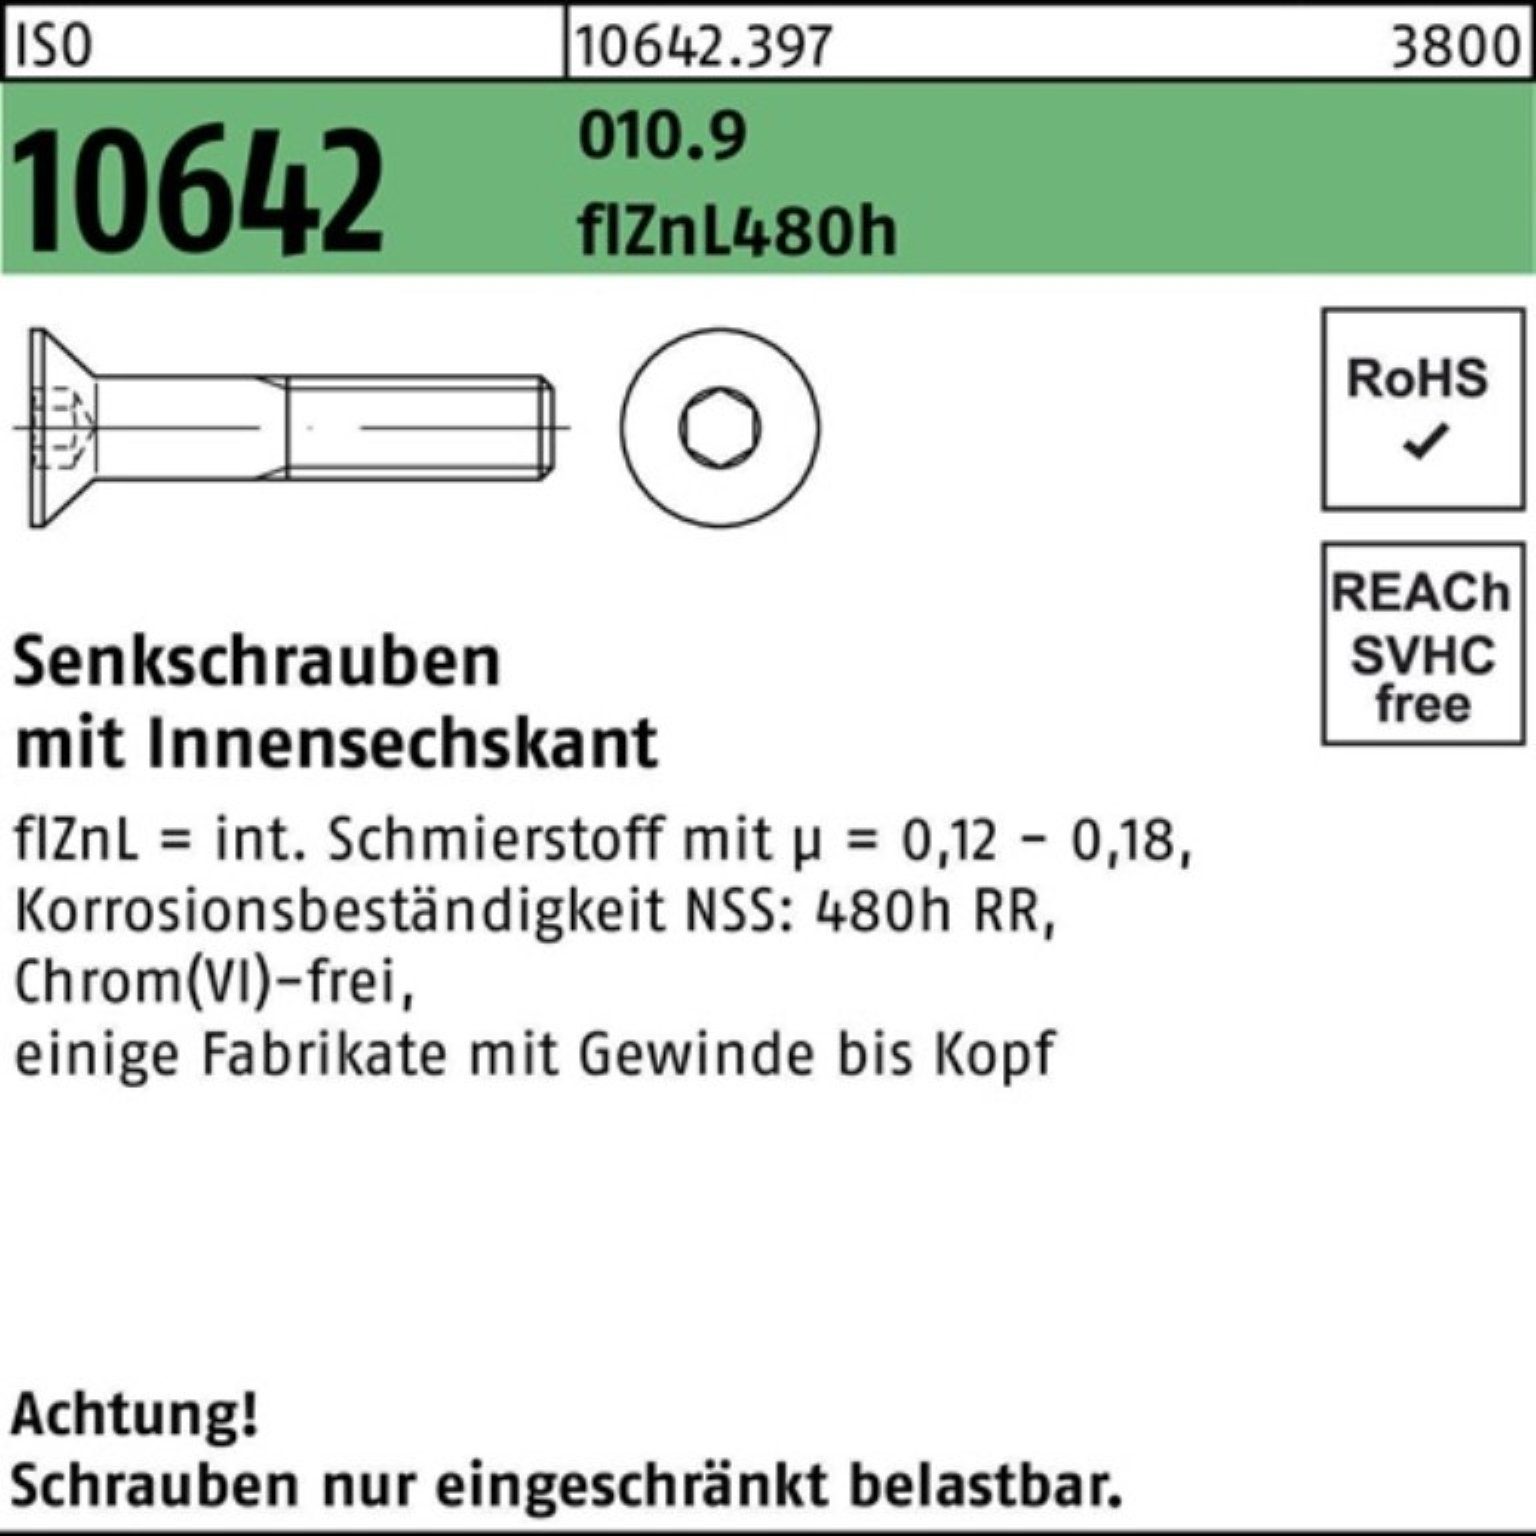 Innen-6kt 100er M12x70 Reyher 10642 Pack 480h zi Senkschraube Senkschraube ISO 010.9 flZnL